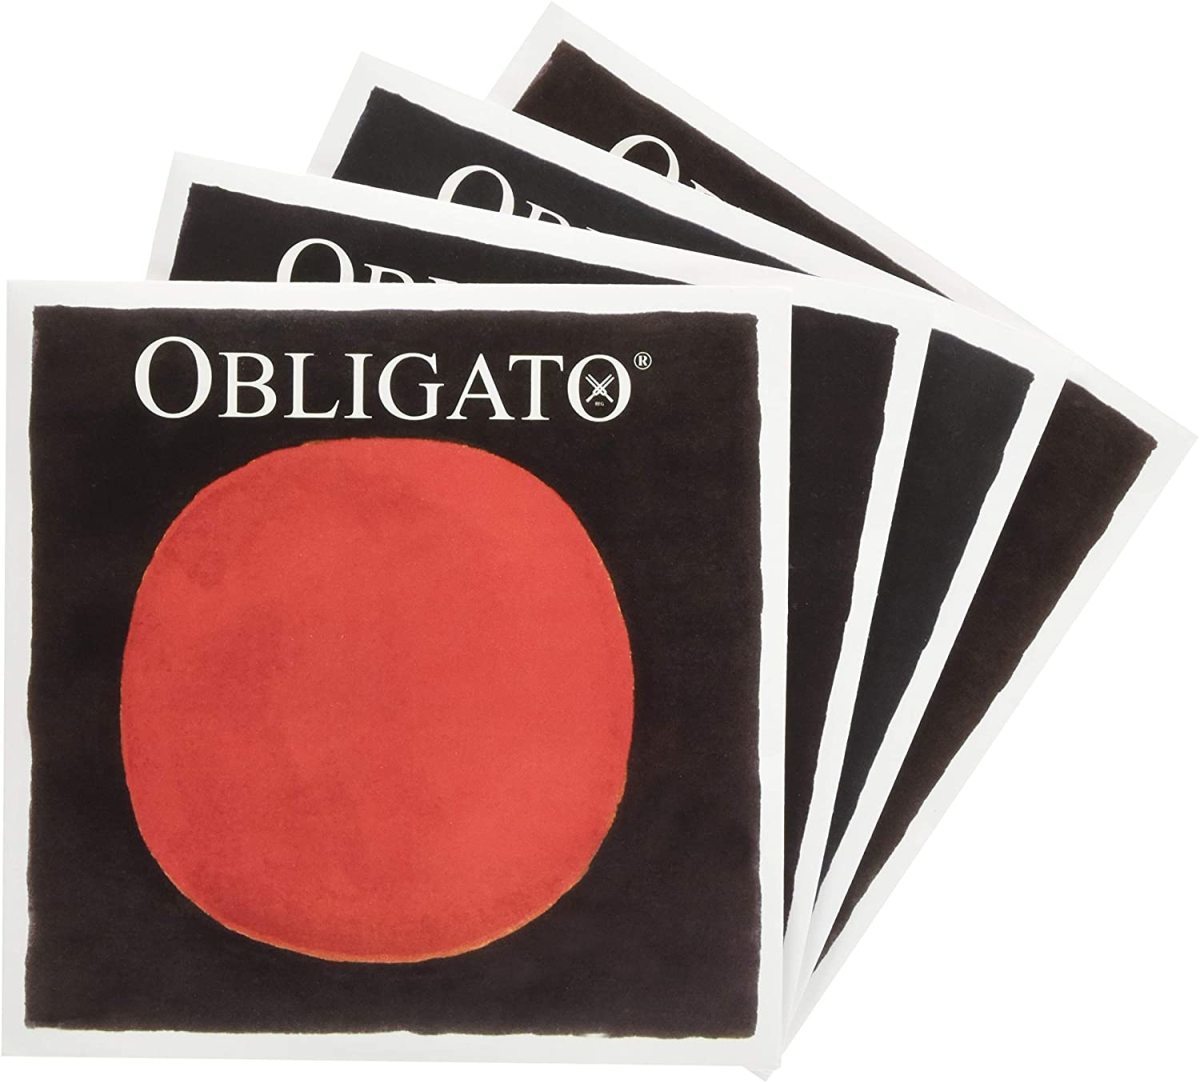 OBLIGATO オブリガート 分数バイオリン弦セット (1/4+1/8)